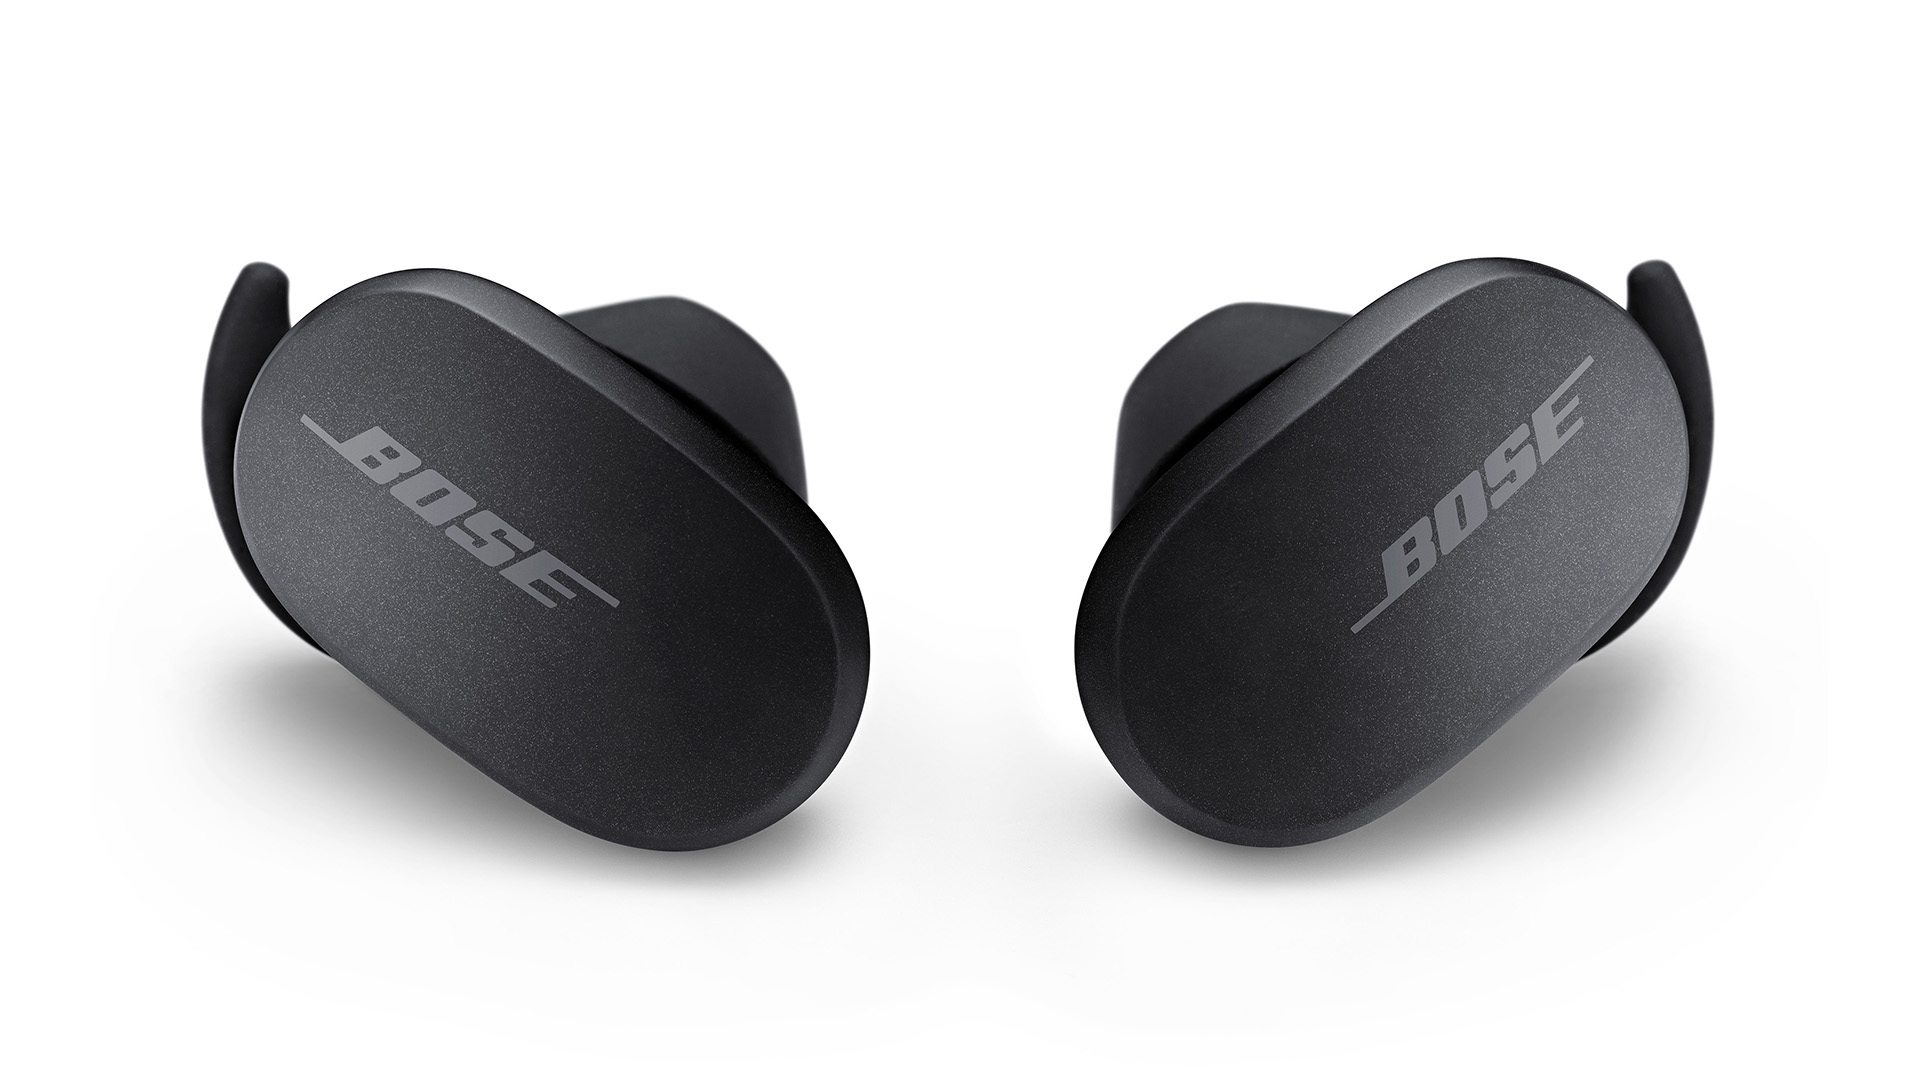 Best iPhone headphones 2022: Bose QuietComfort Earbuds